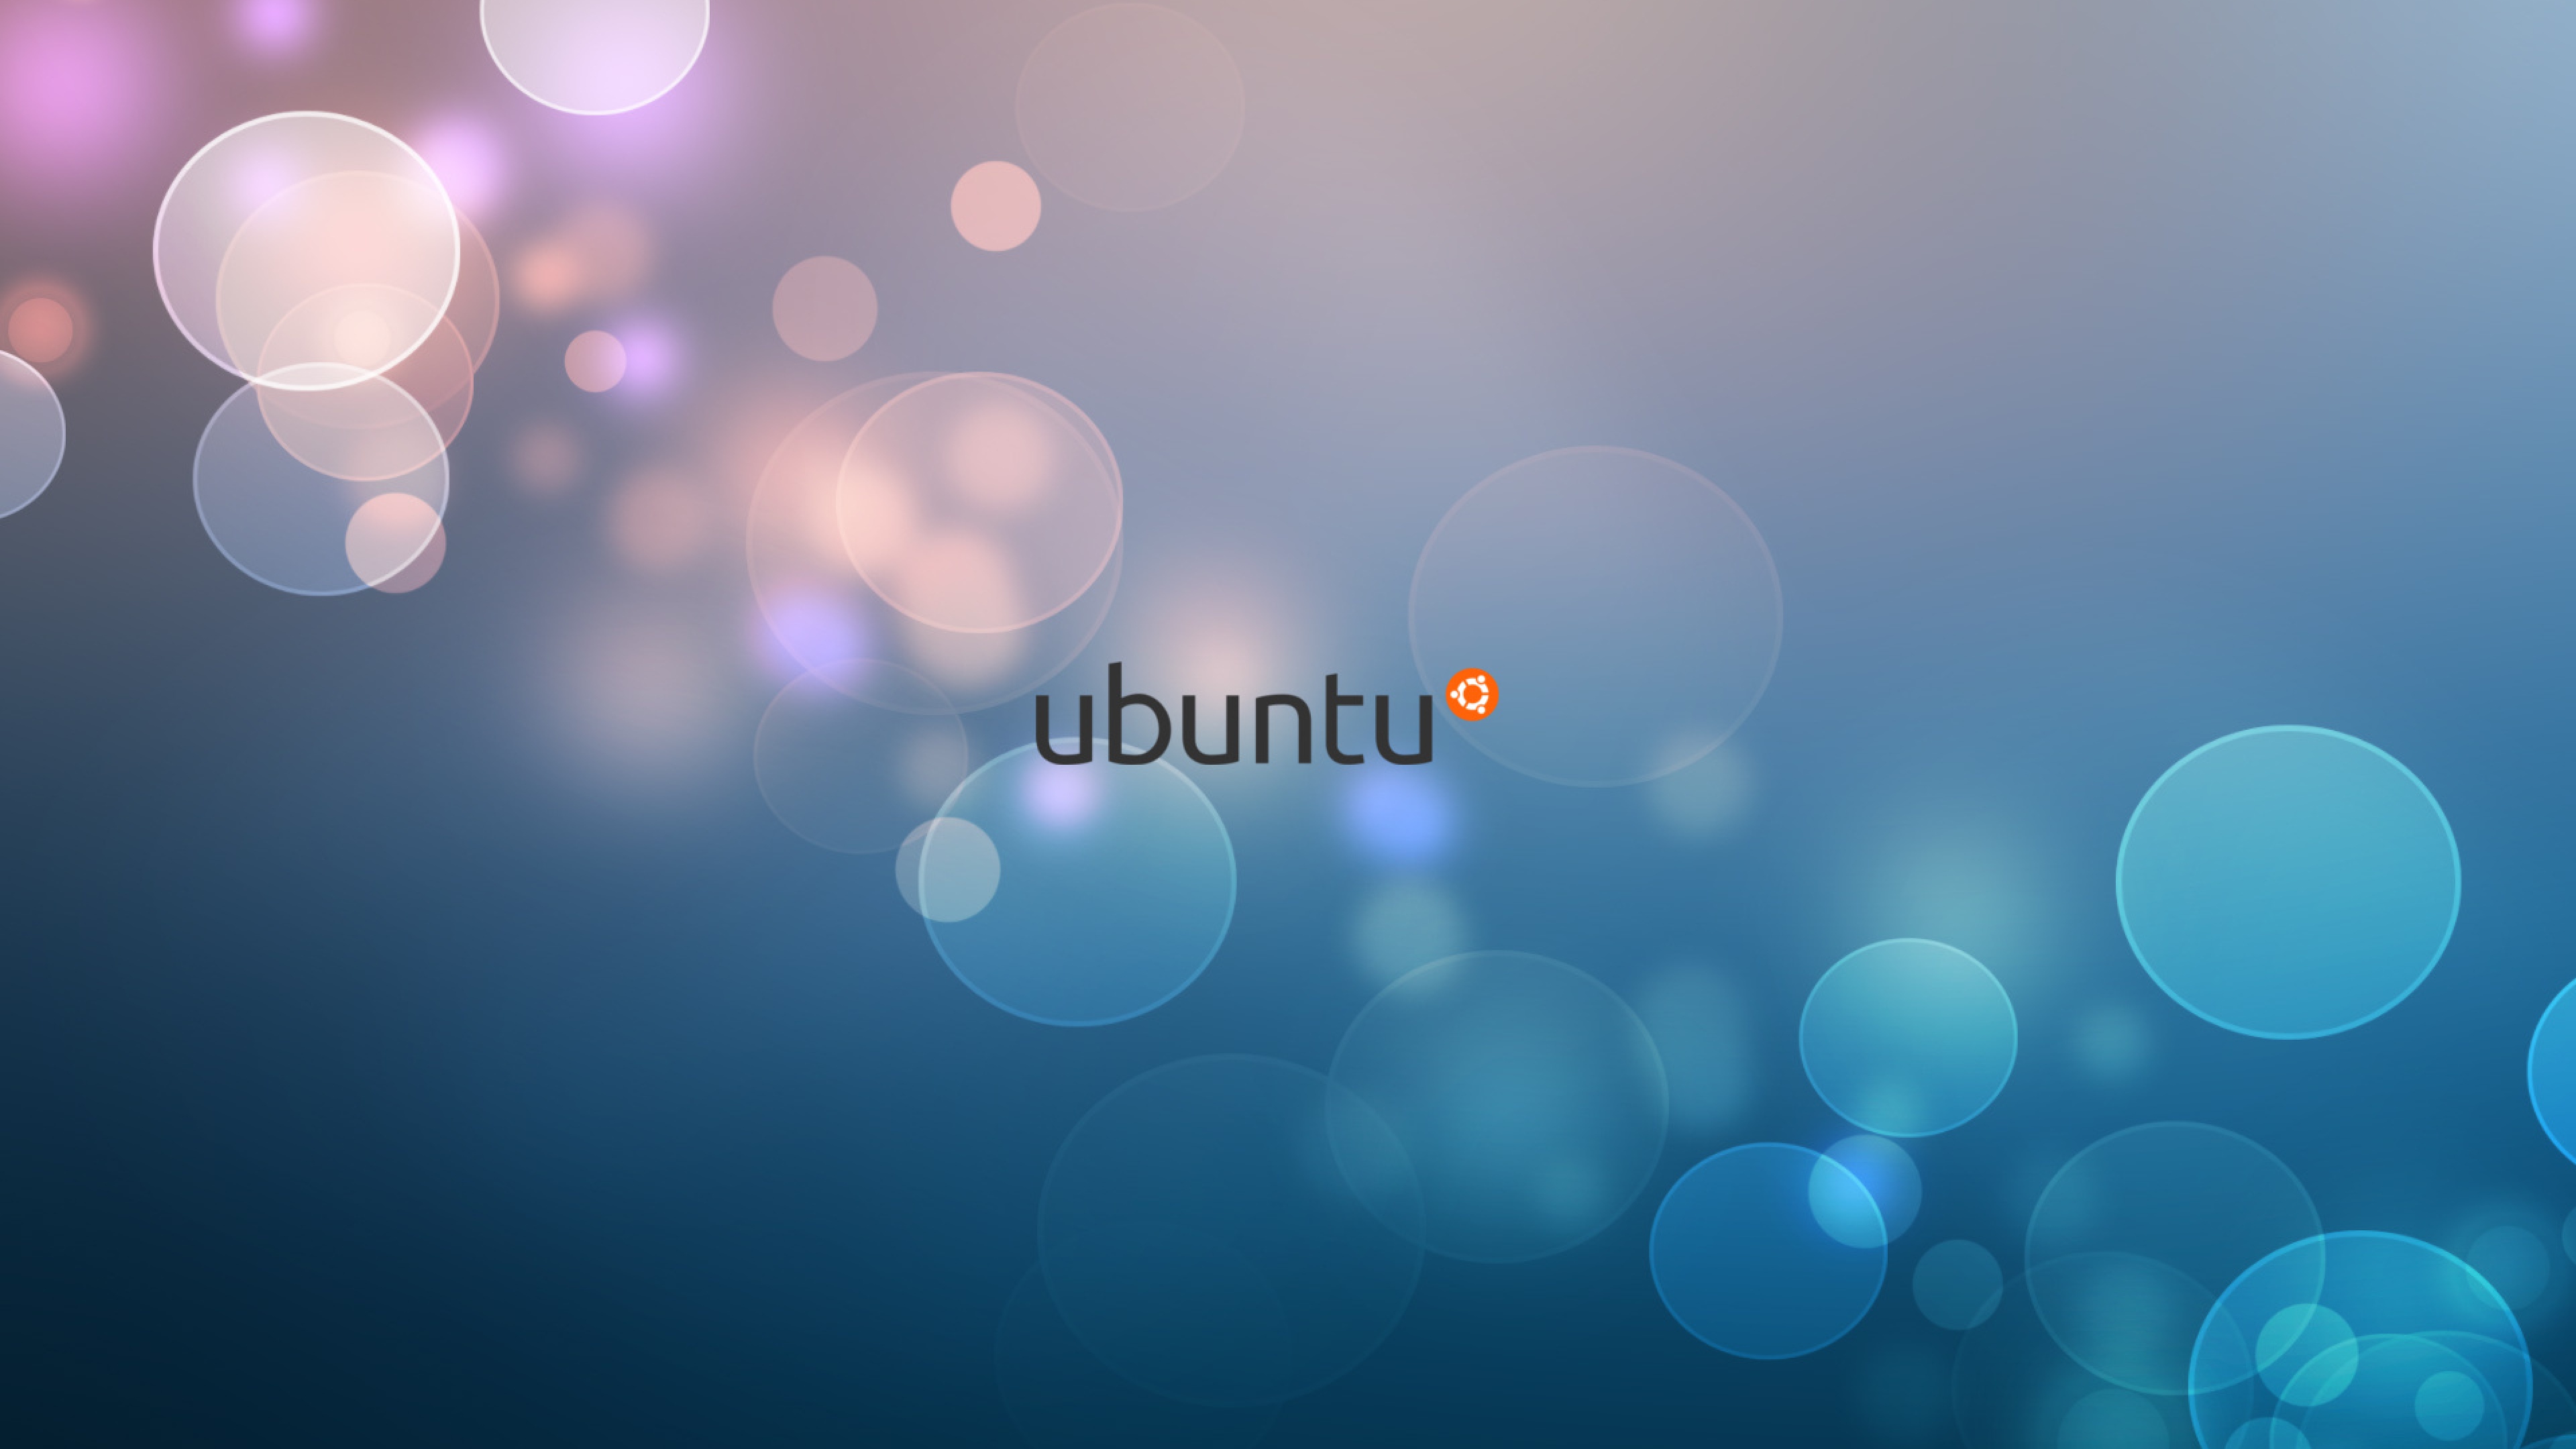 Ubuntu Logo 2 Hd Logo 4k Wallpapers Images Backgrounds Photos And